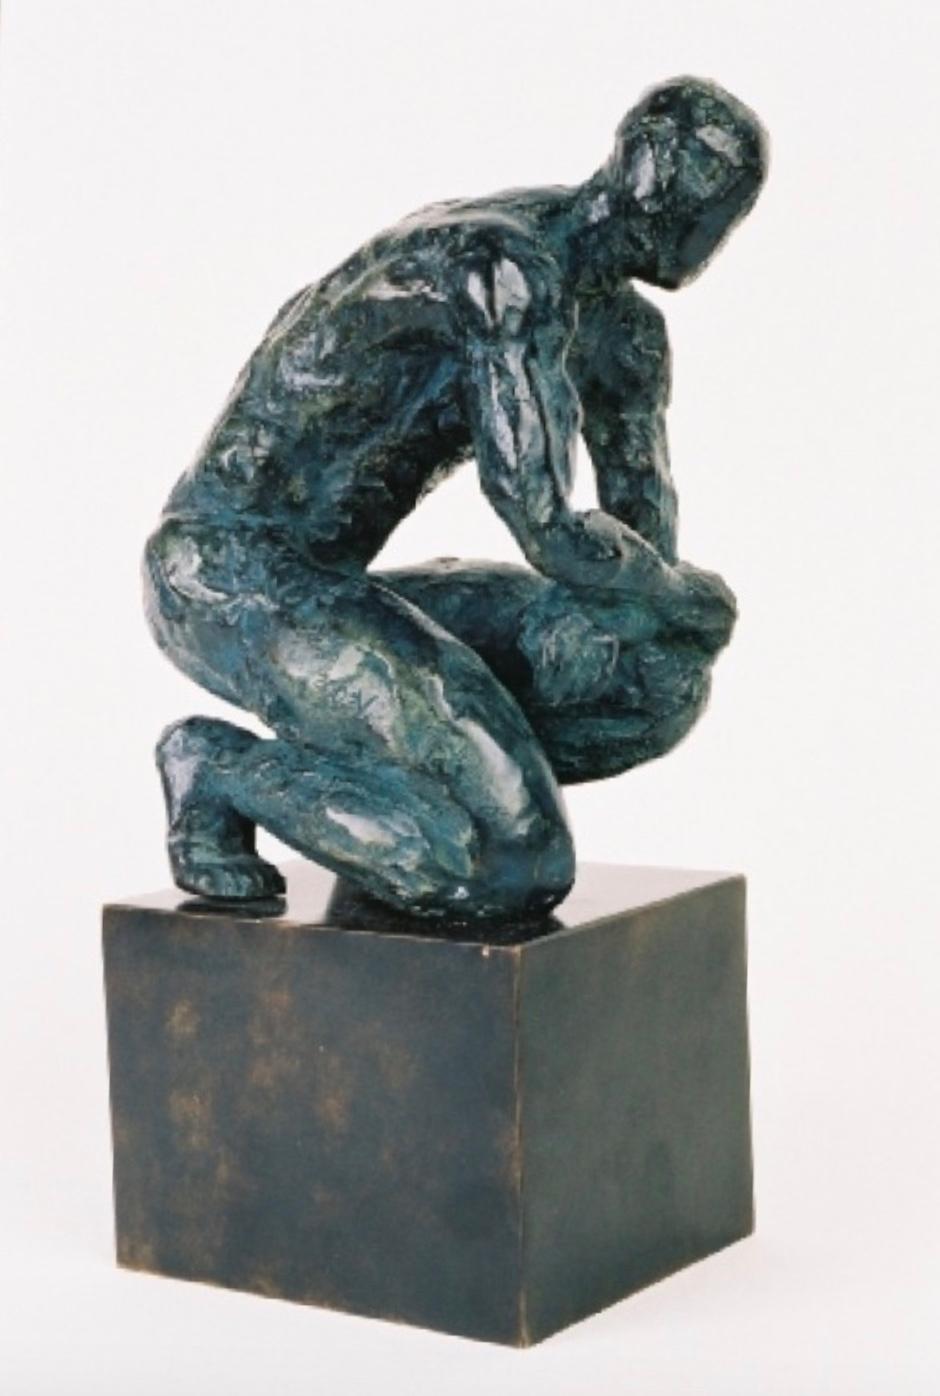 Ludo ist eine Bronzeskulptur des französischen zeitgenössischen Künstlers Yann Guillon mit den Maßen 25 × 20 × 15 cm (9,8 × 7,9 × 5,9 in).  
Diese Skulptur ist signiert und nummeriert, sie gehört zu einer limitierten Auflage von 8 Exemplaren + 4